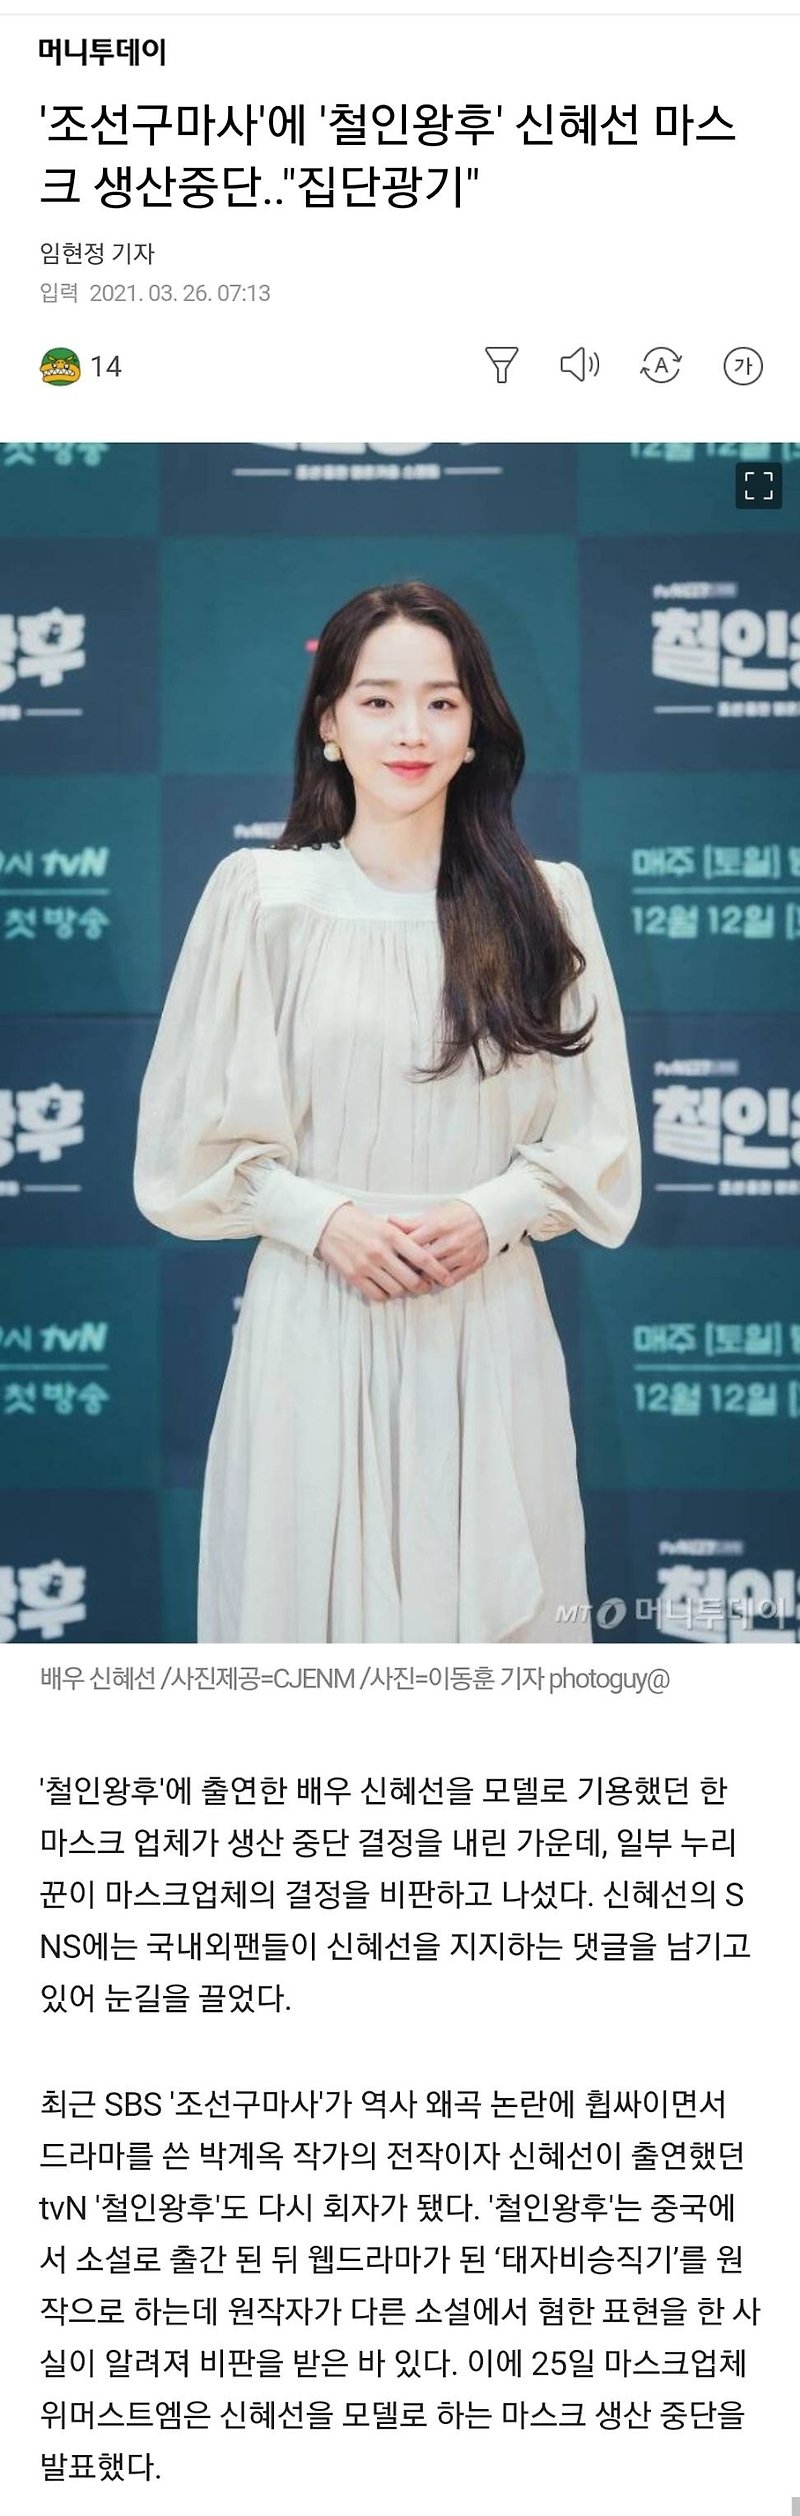 '조선구마사'에 '철인왕후' 신혜선 마스크 생산중단..